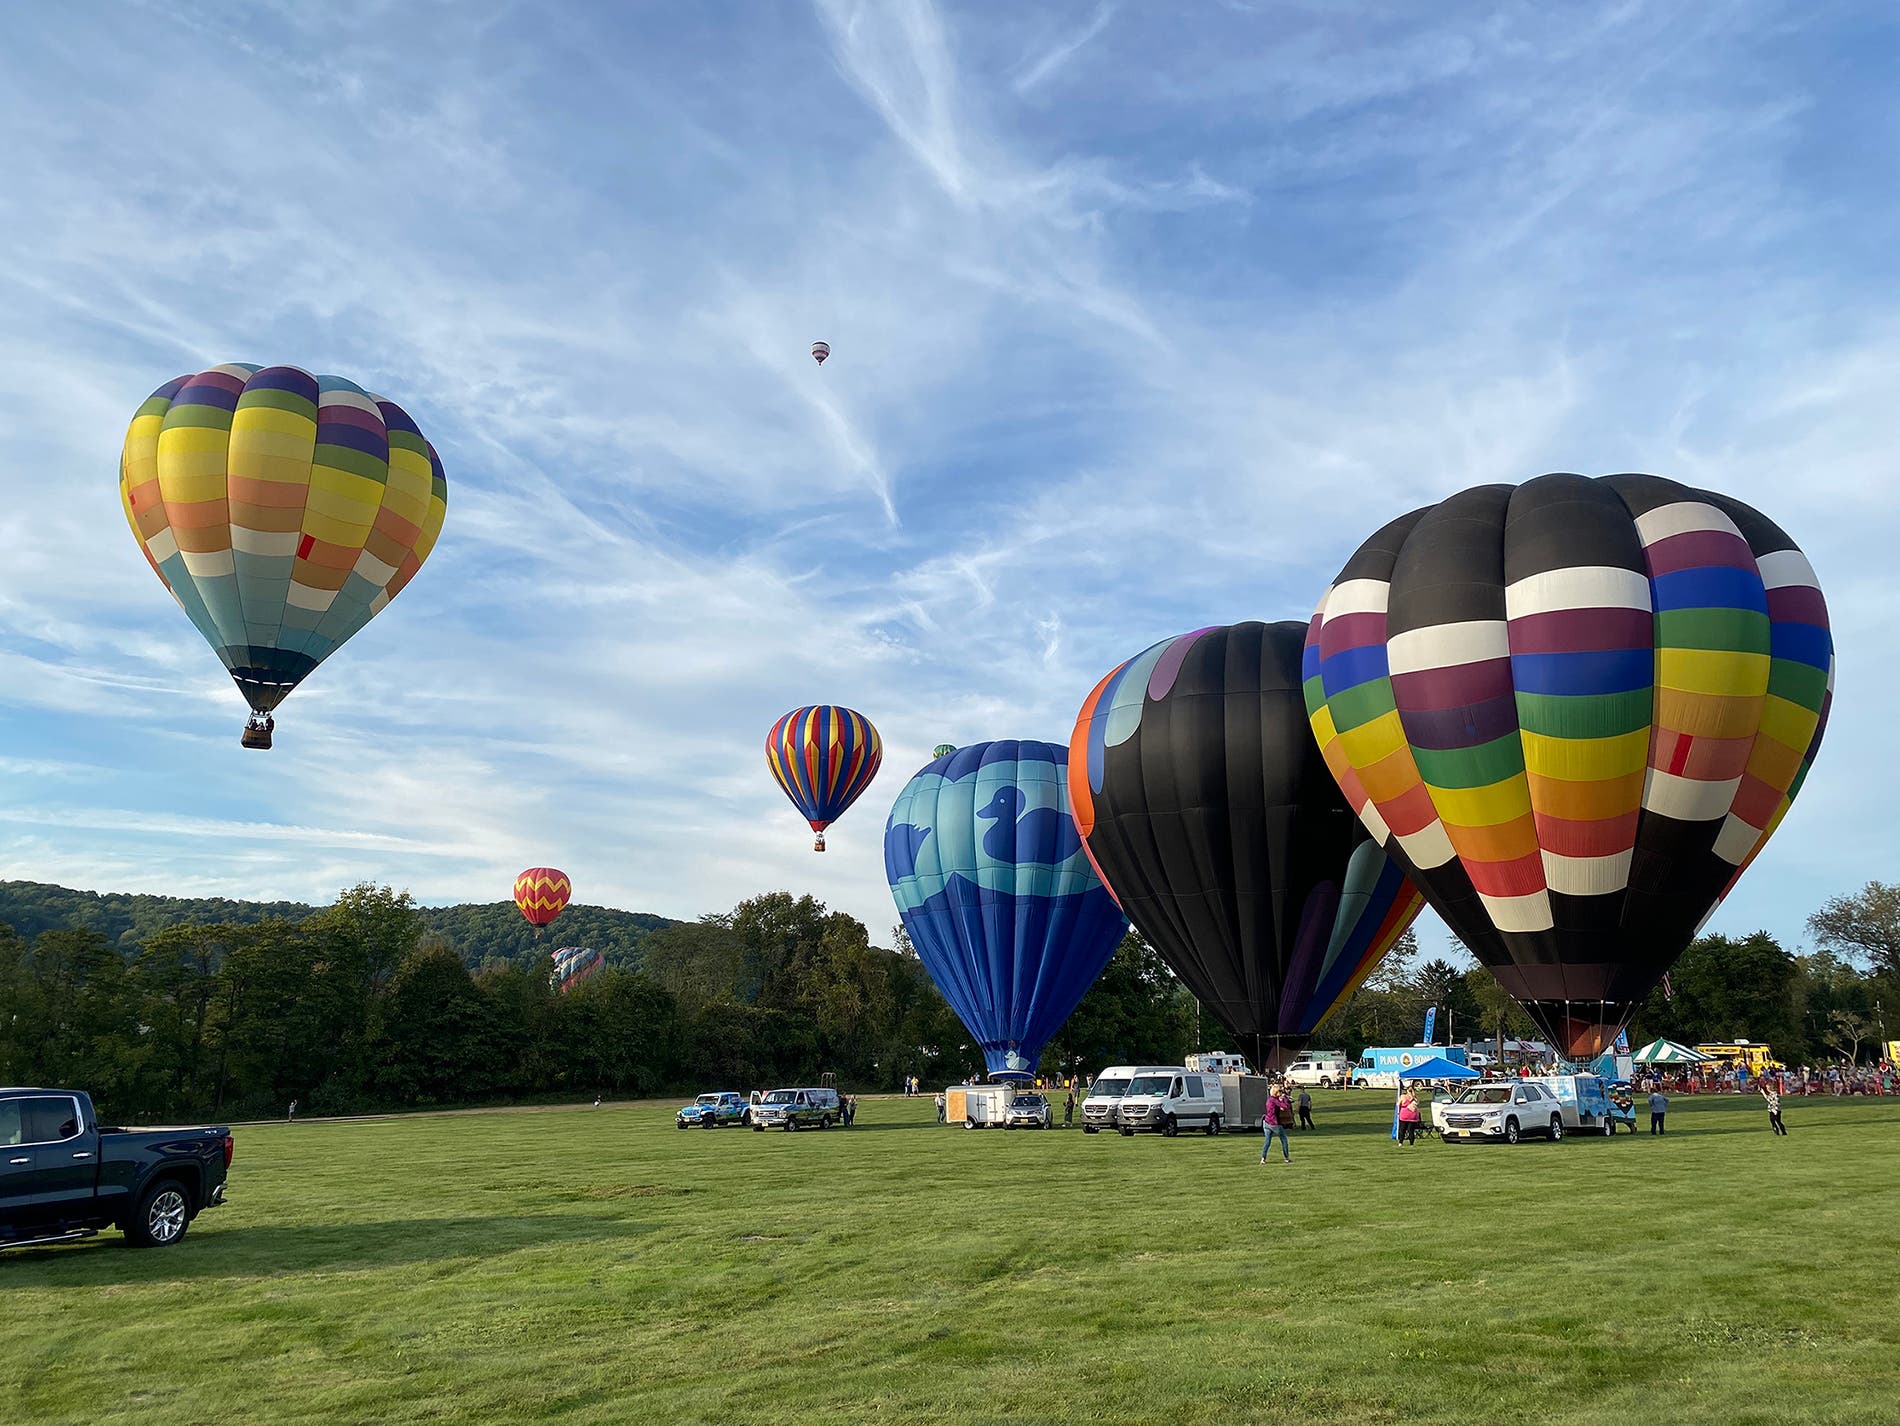 The Warren County Farmers Fair featuring the Hot Air Balloon Festival